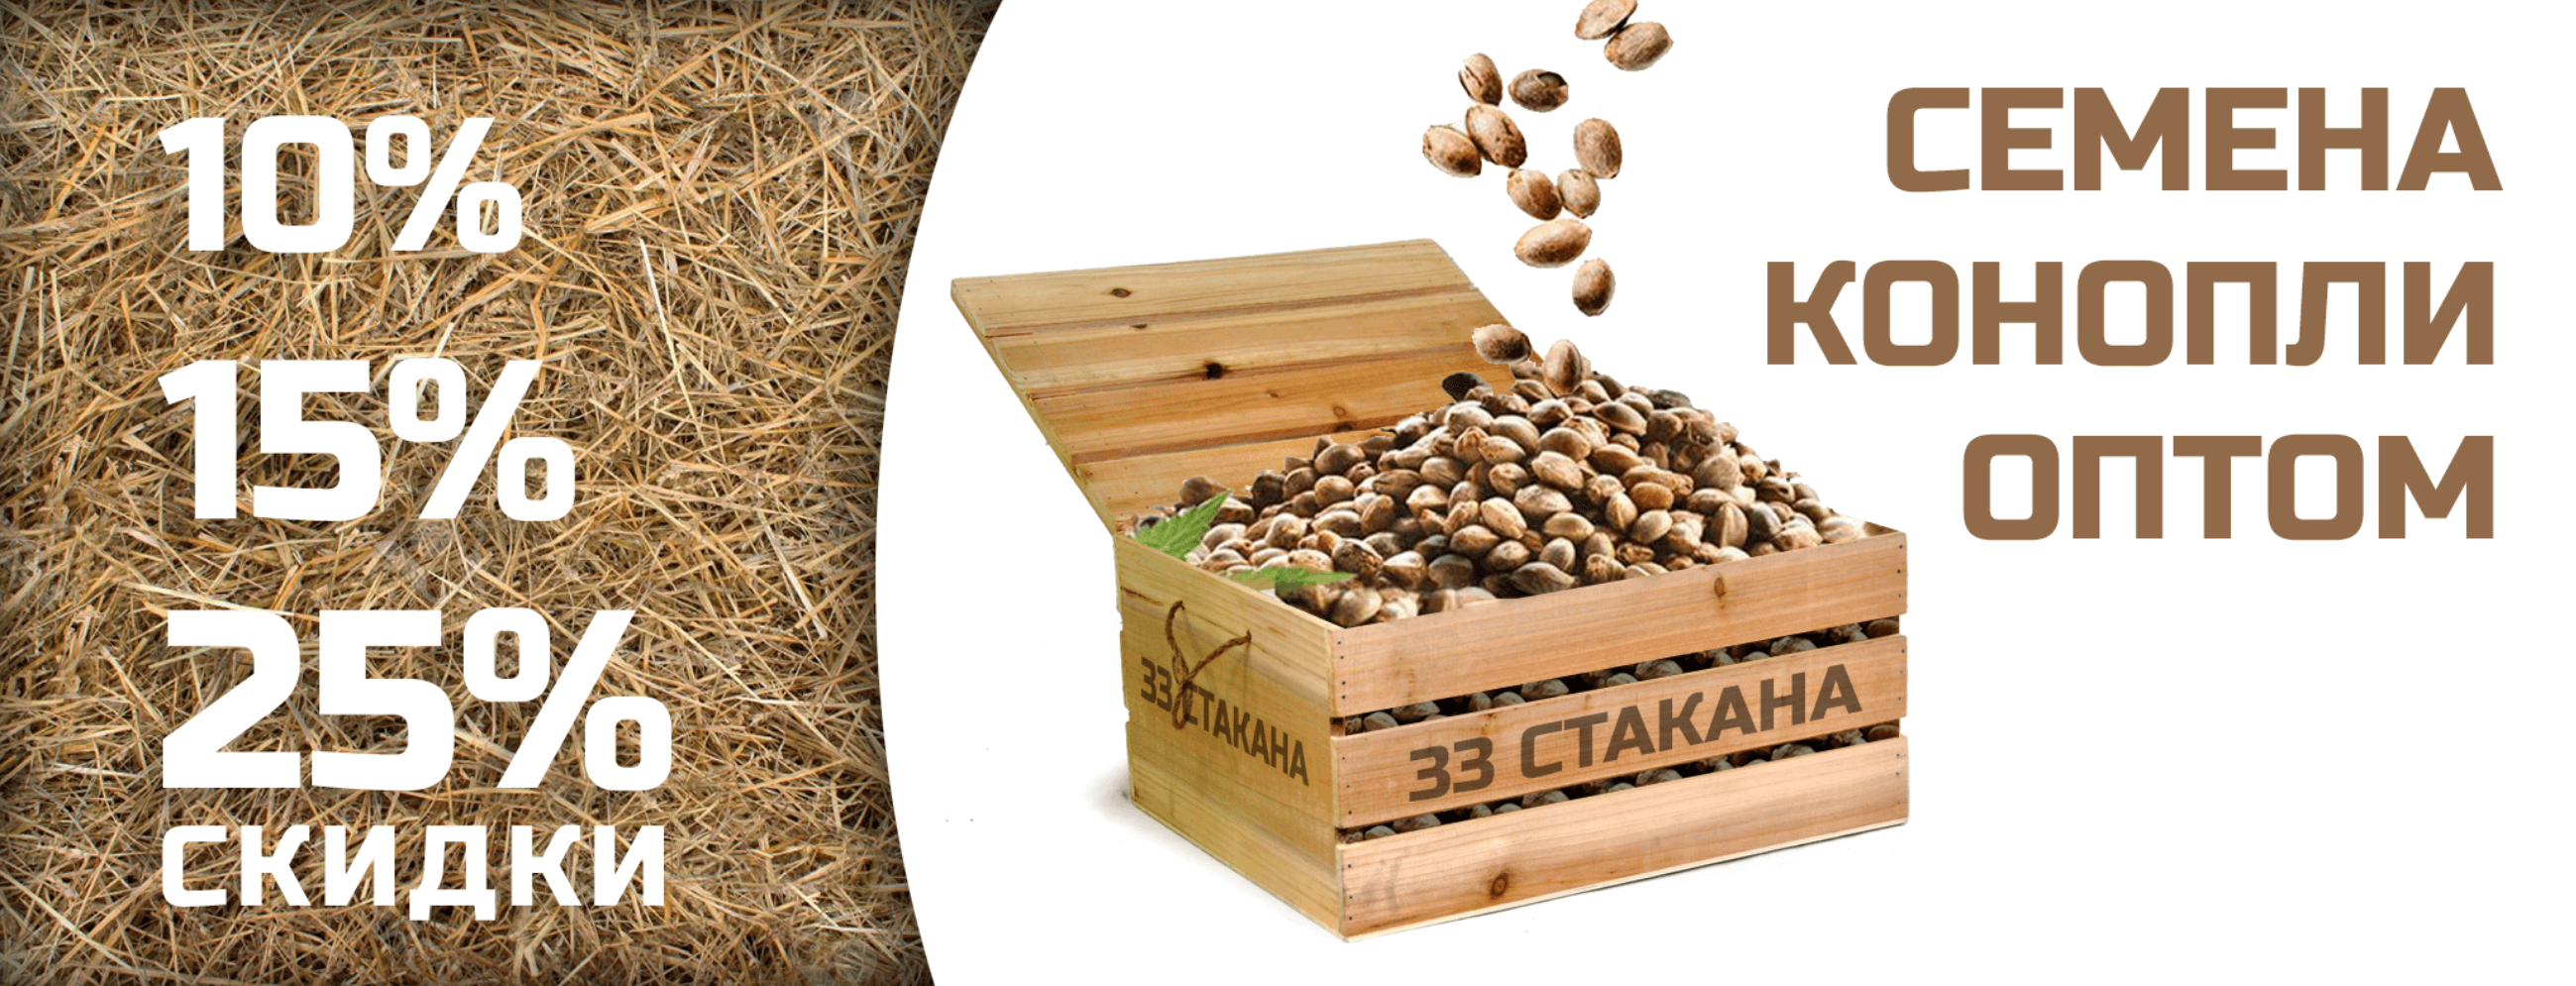 Покупка семян конопли скачать тор браузер официальный сайт на русском